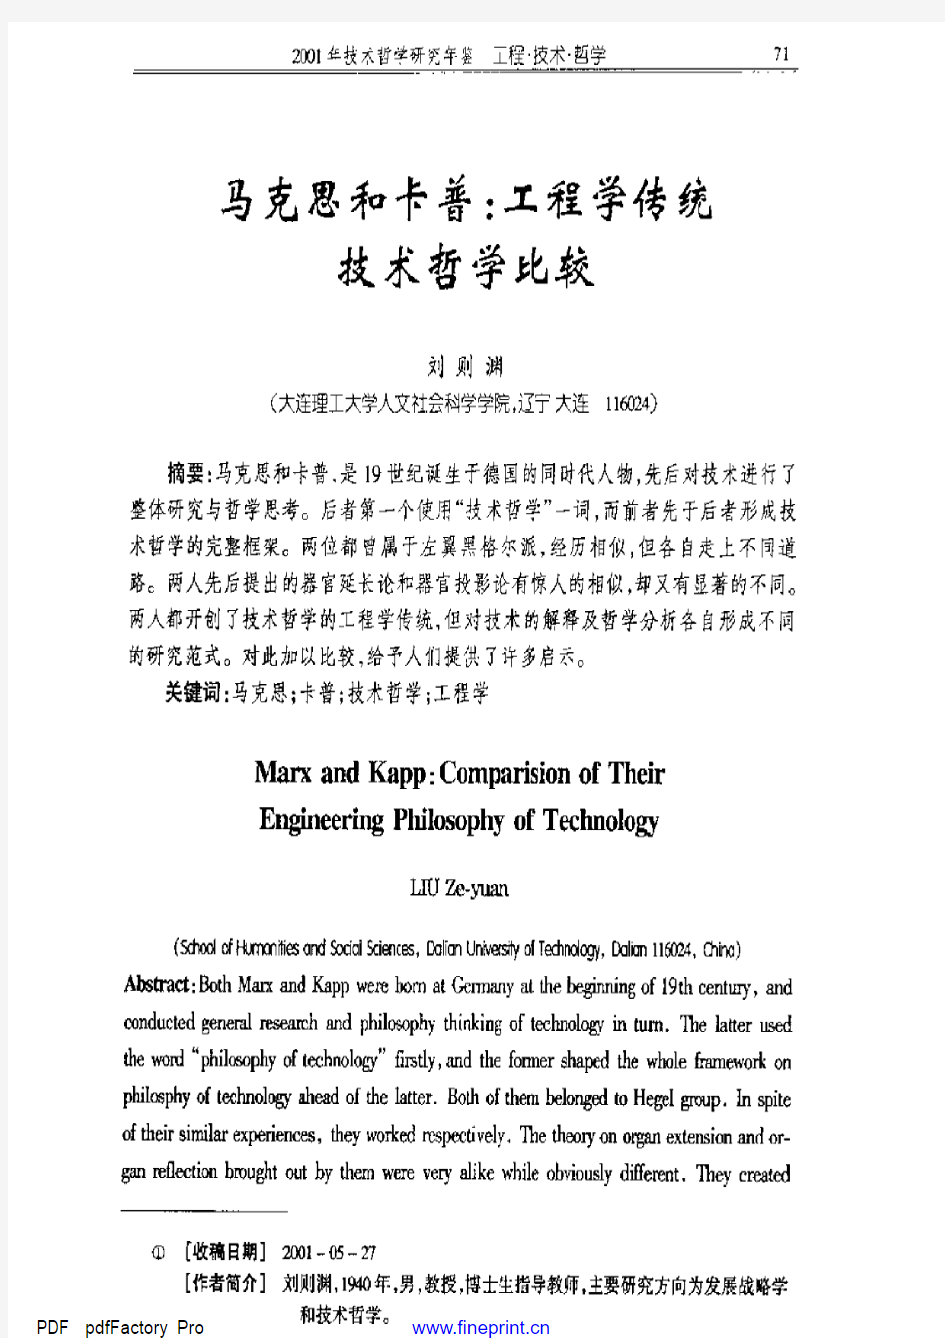 刘则渊-马克思和卡普：工程学传统技术哲学比较